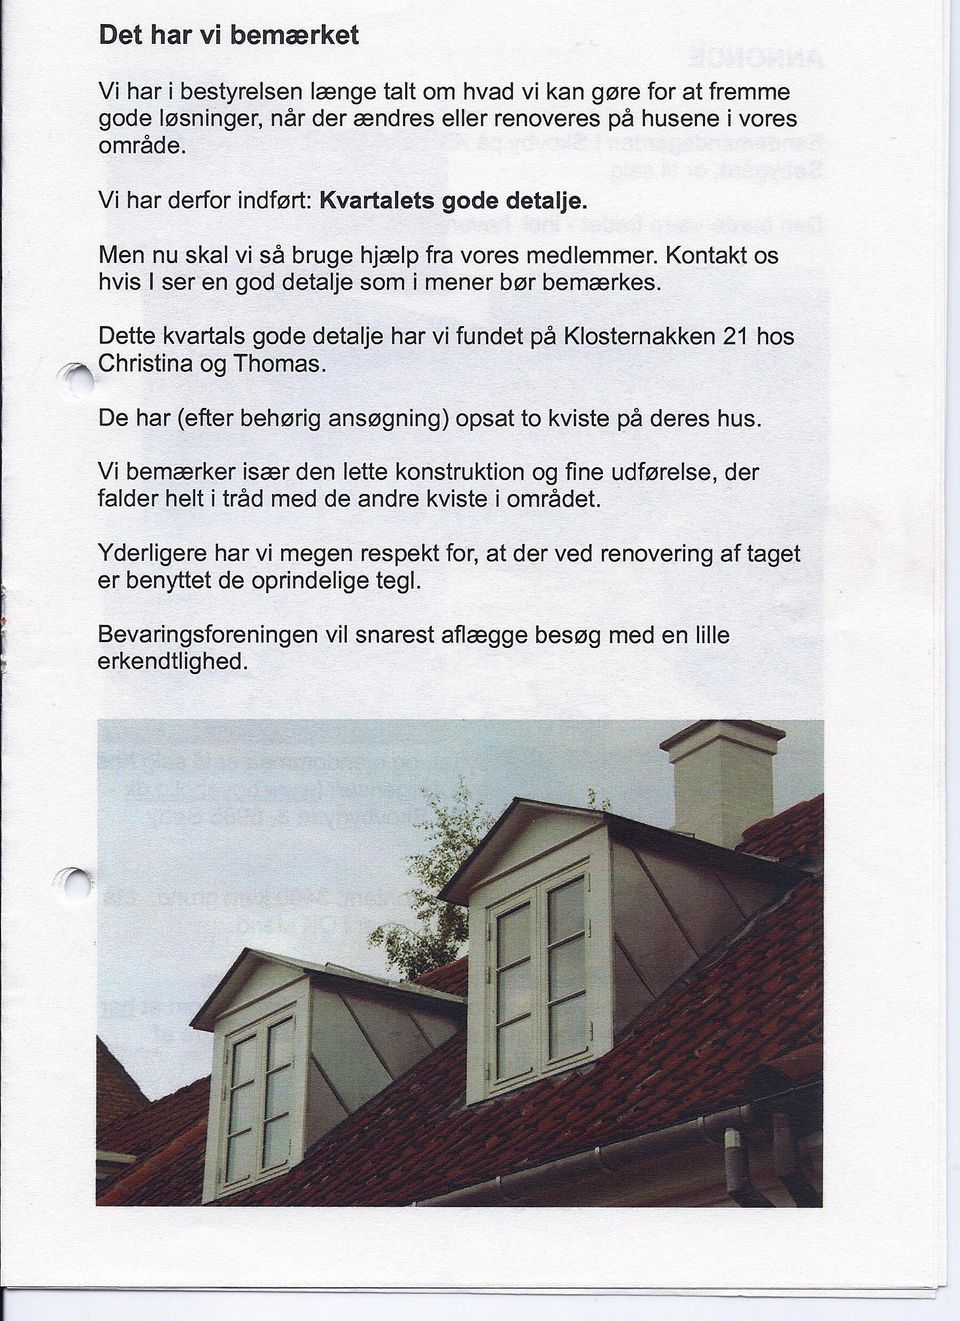 Dette kvartals gode detalje har vi fundet på Klosternakken Christina og Thomas. 21 hos De har (efter behørig ansøgning) opsat to kviste på deres hus.